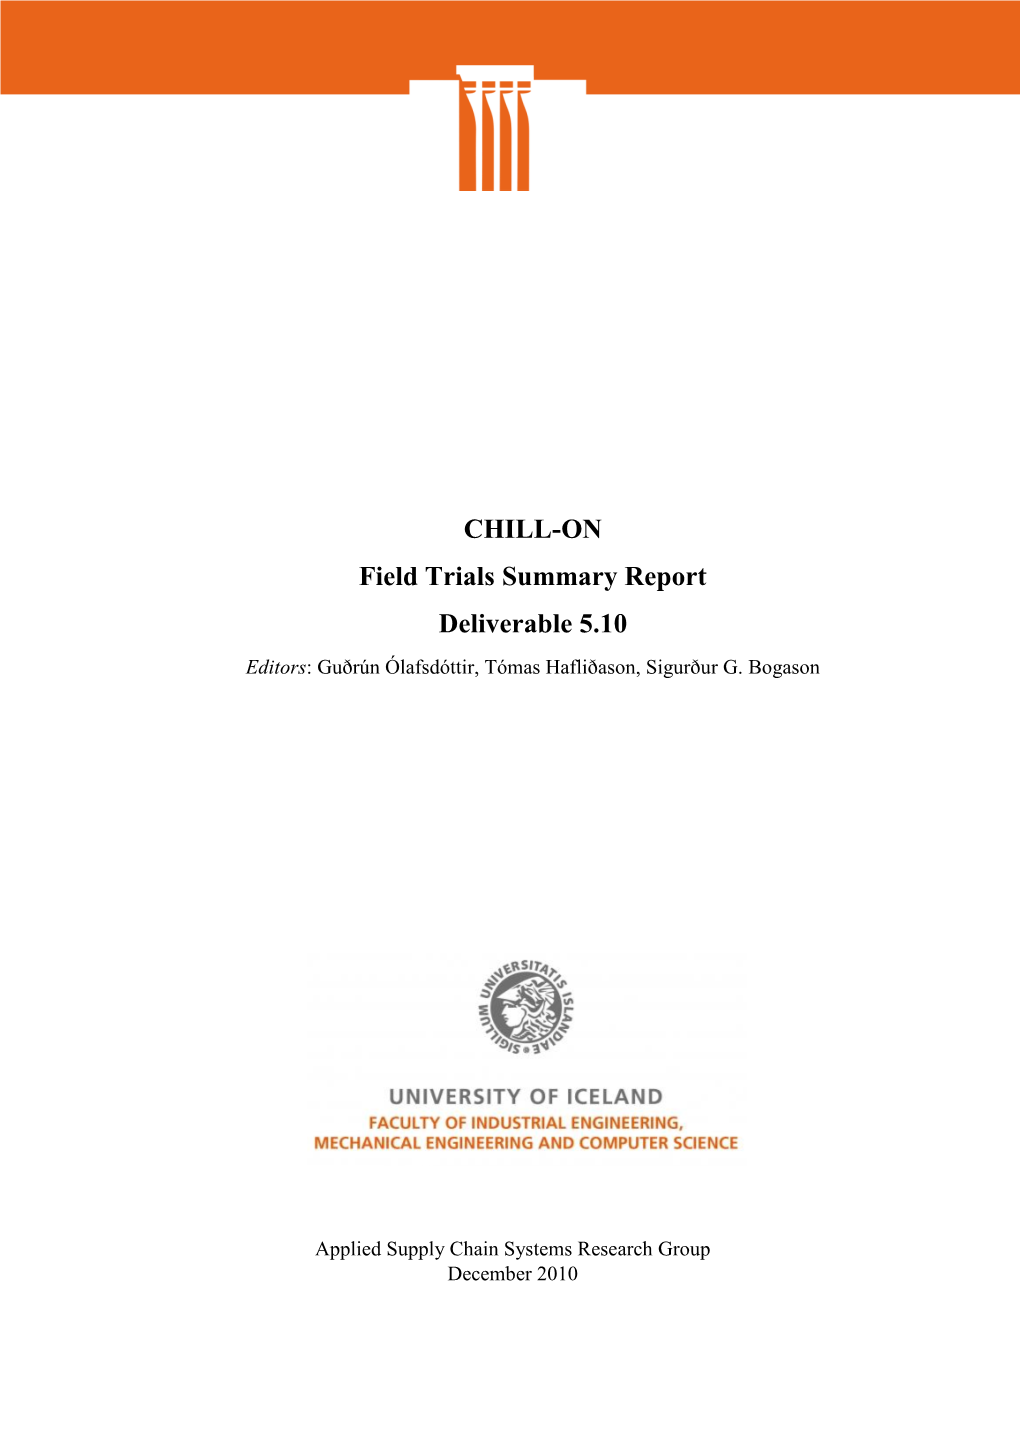 CHILL-ON Field Trials Summary Report Deliverable 5.10 Editors: Guðrún Ólafsdóttir, Tómas Hafliðason, Sigurður G